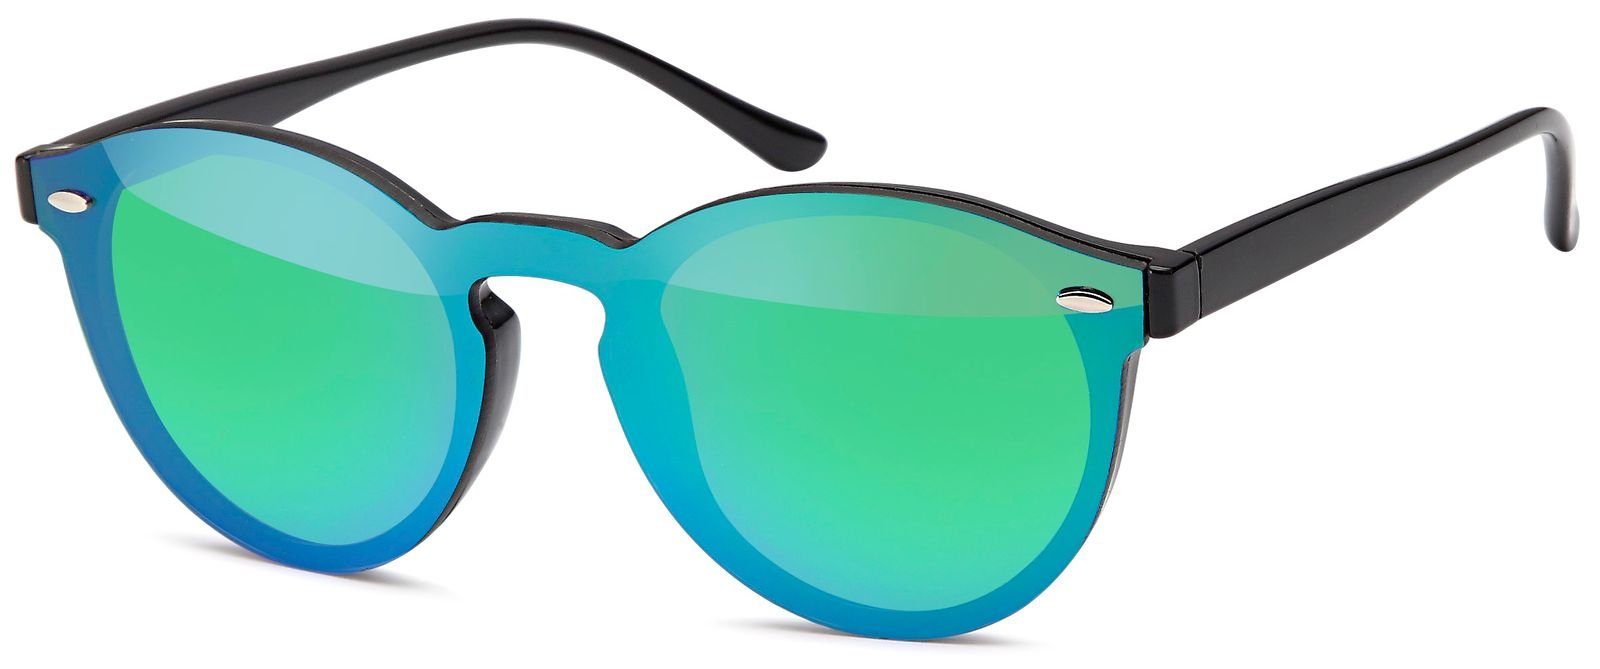 styleBREAKER Sonnenbrille Getönt, Monoscheibe Sonnenbrille mit verspiegelt  und getöntem flachen Glas online kaufen | OTTO